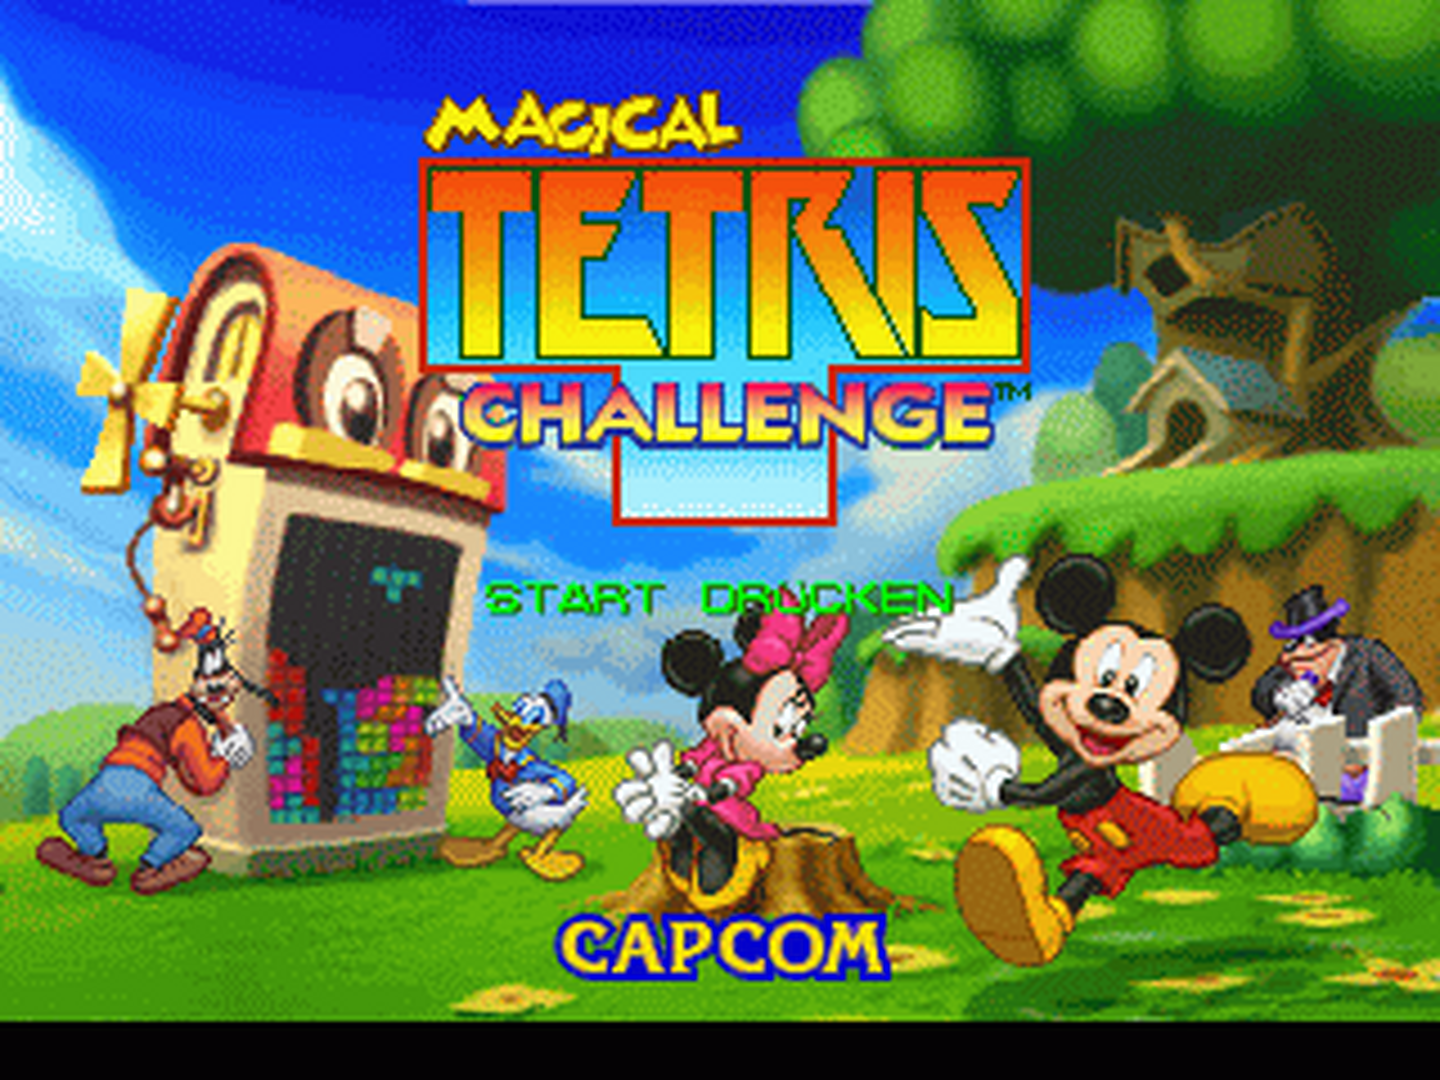 N64 GameBase Magical_Tetris_Challenge_(G) Capcom 1999